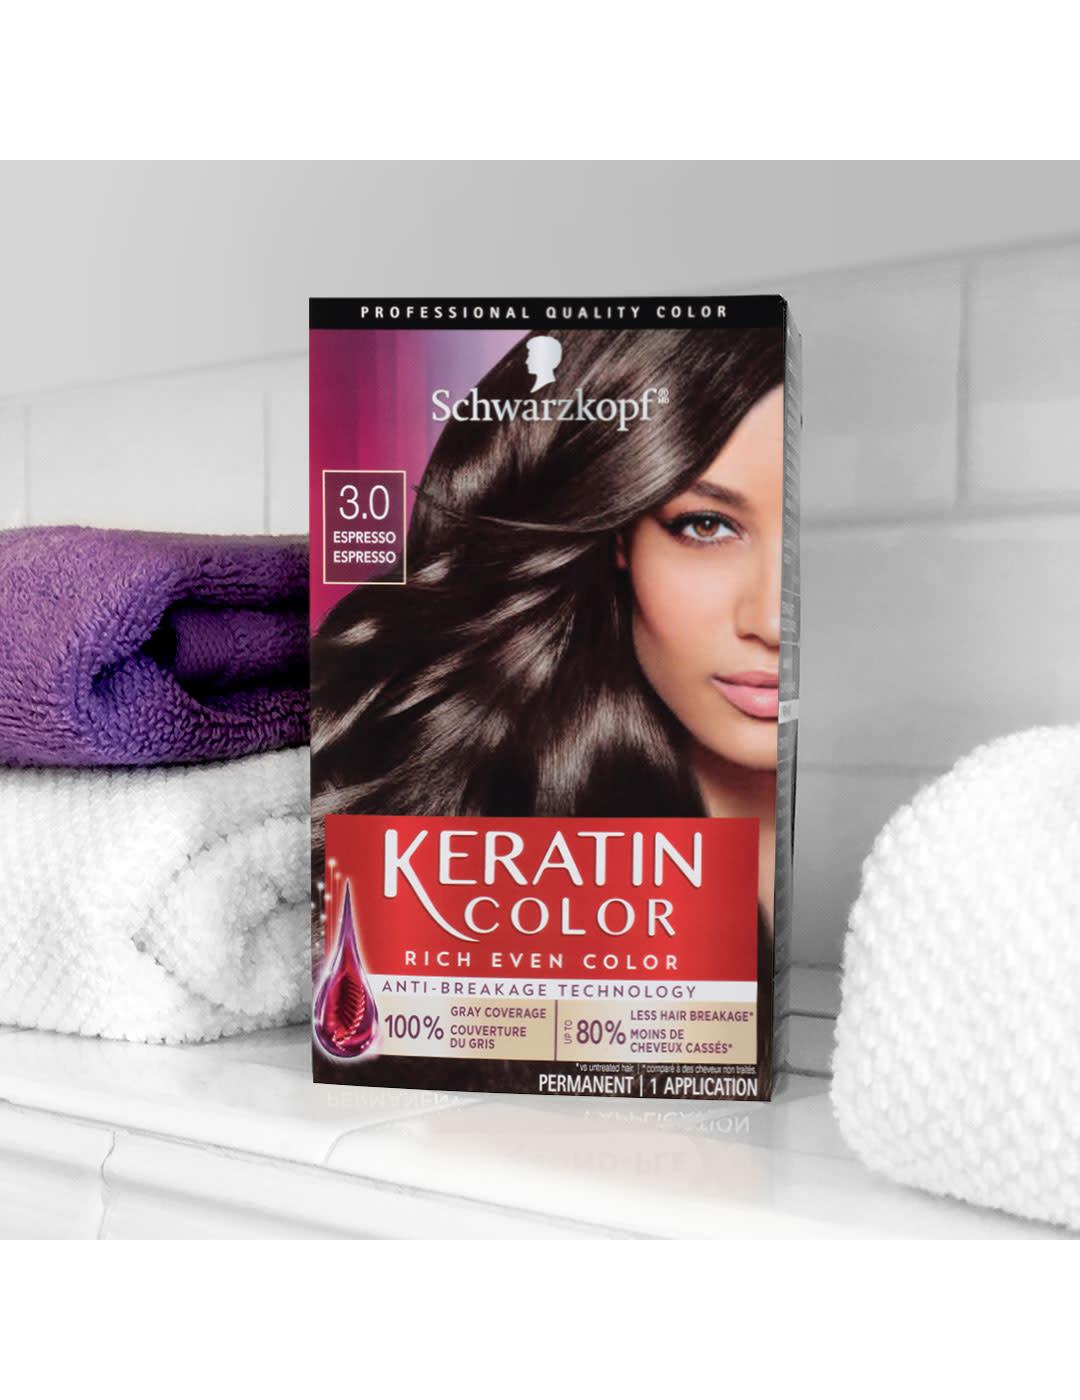 Schwarzkopf Keratin Color Permanent Hair Color - 3.0 Espresso; image 4 of 5